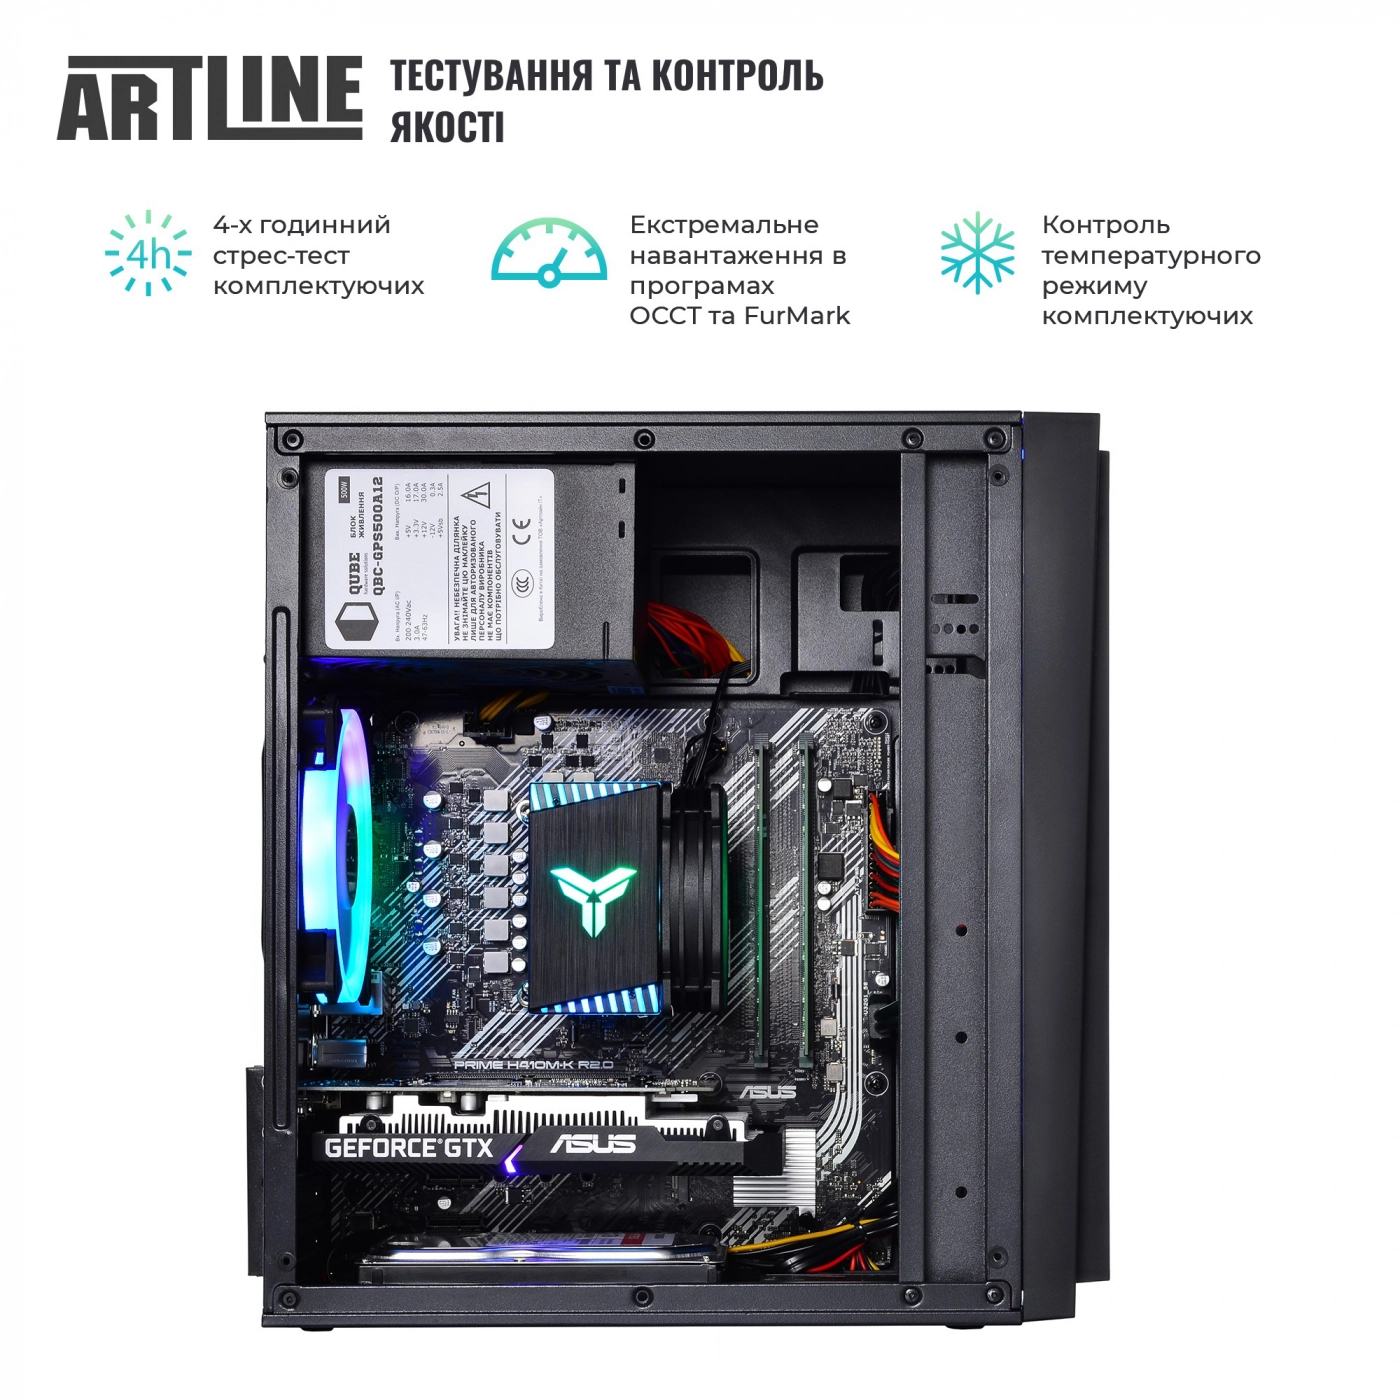 Купить Компьютер ARTLINE Gaming X43v30 - фото 6